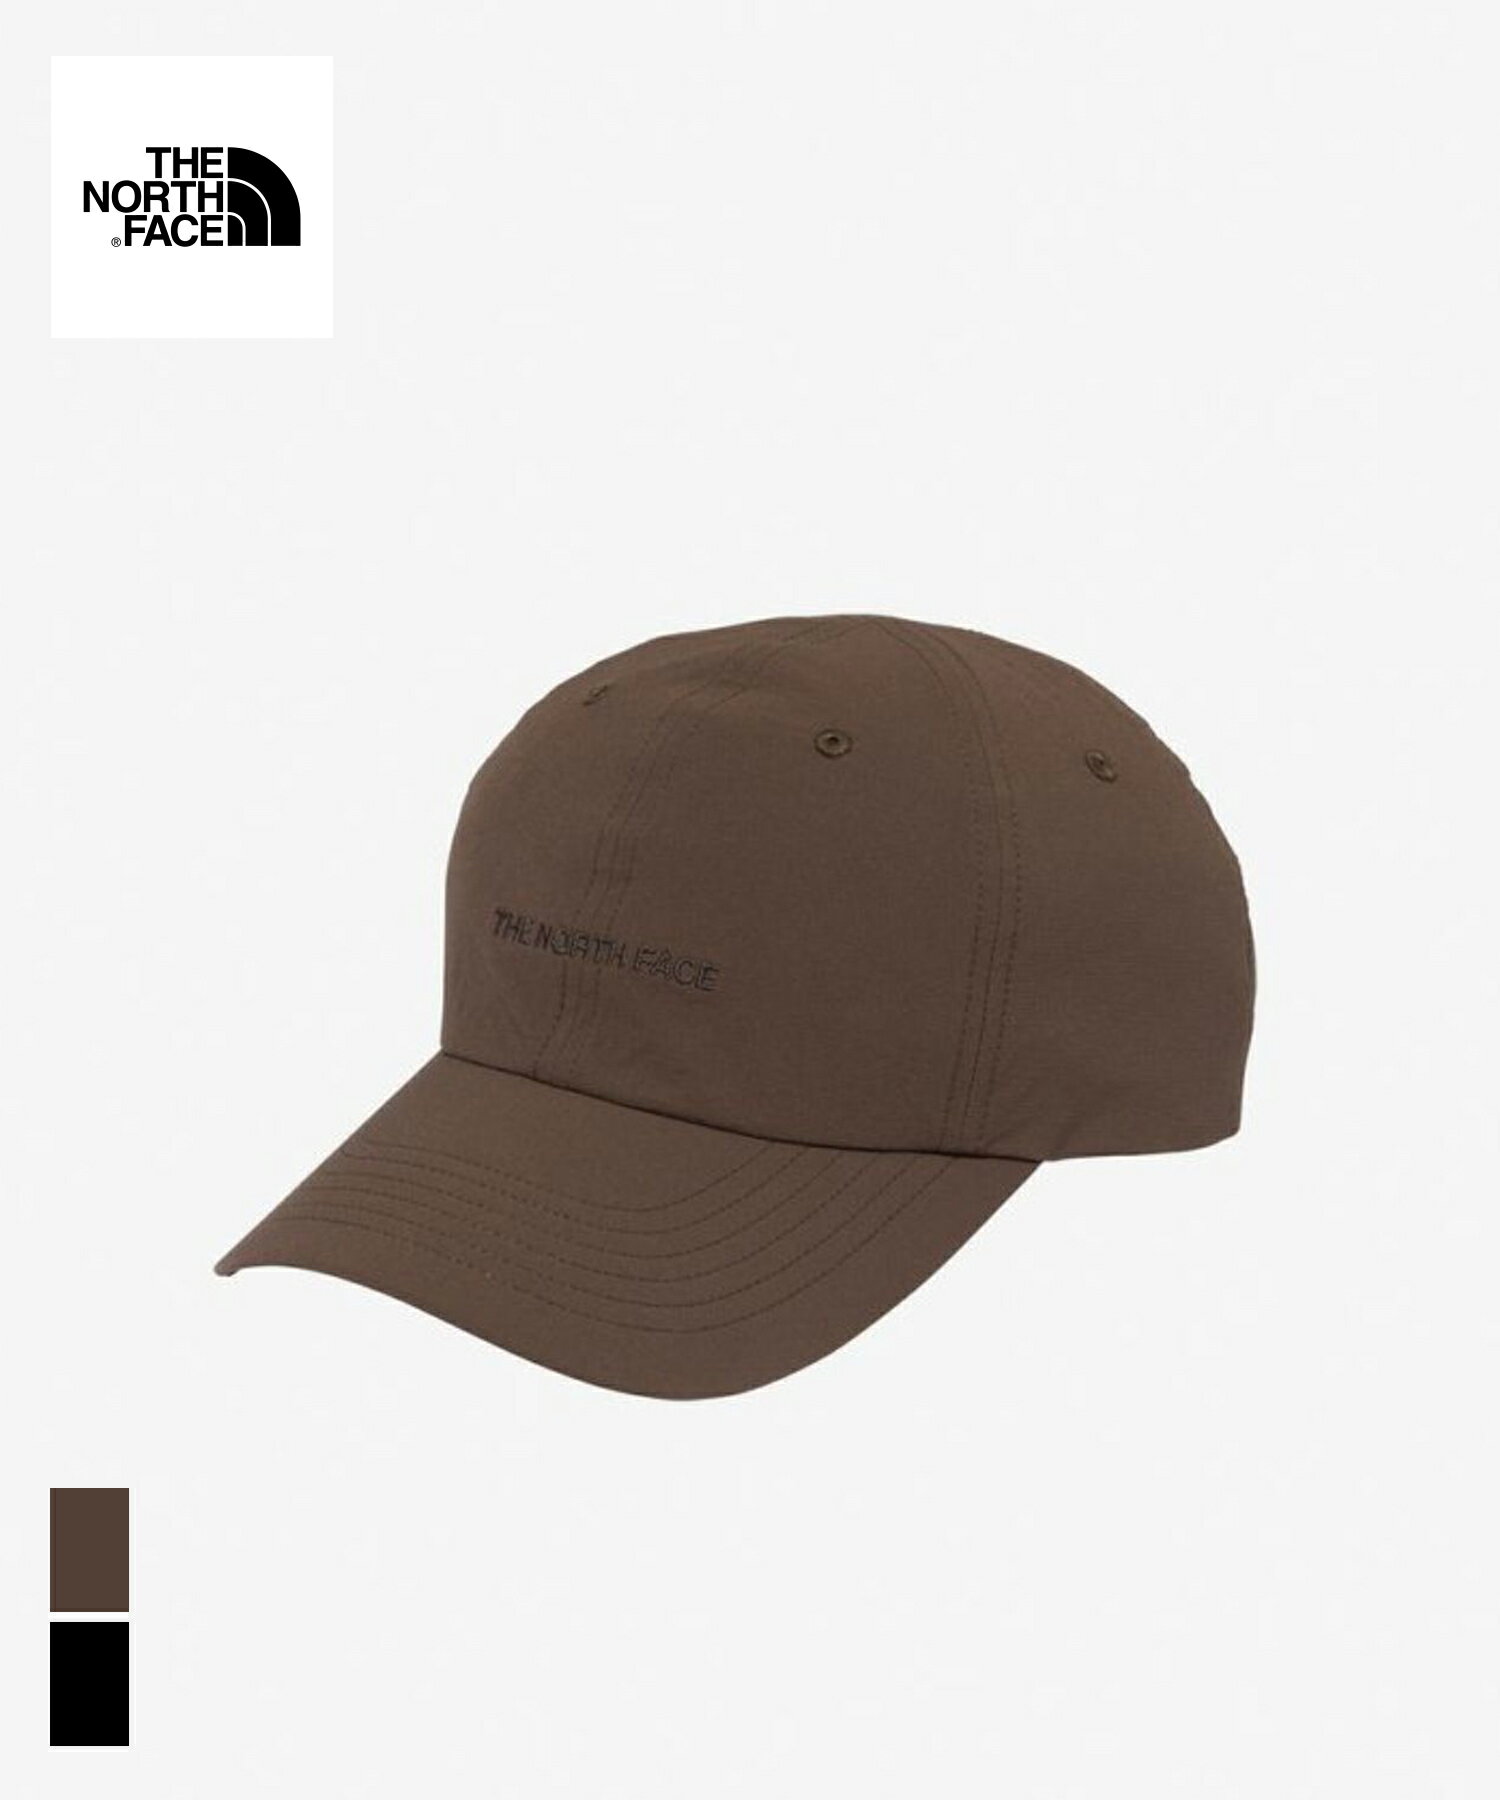 THE NORTH FACE Active Light Cap - (NN02378)国内正規品 ユニセックス 帽子 ヘッドウェア カジュアル ストリート スポーティー シンプル ブラック ブラウン ベージュ オールシーズン フリーサイズ